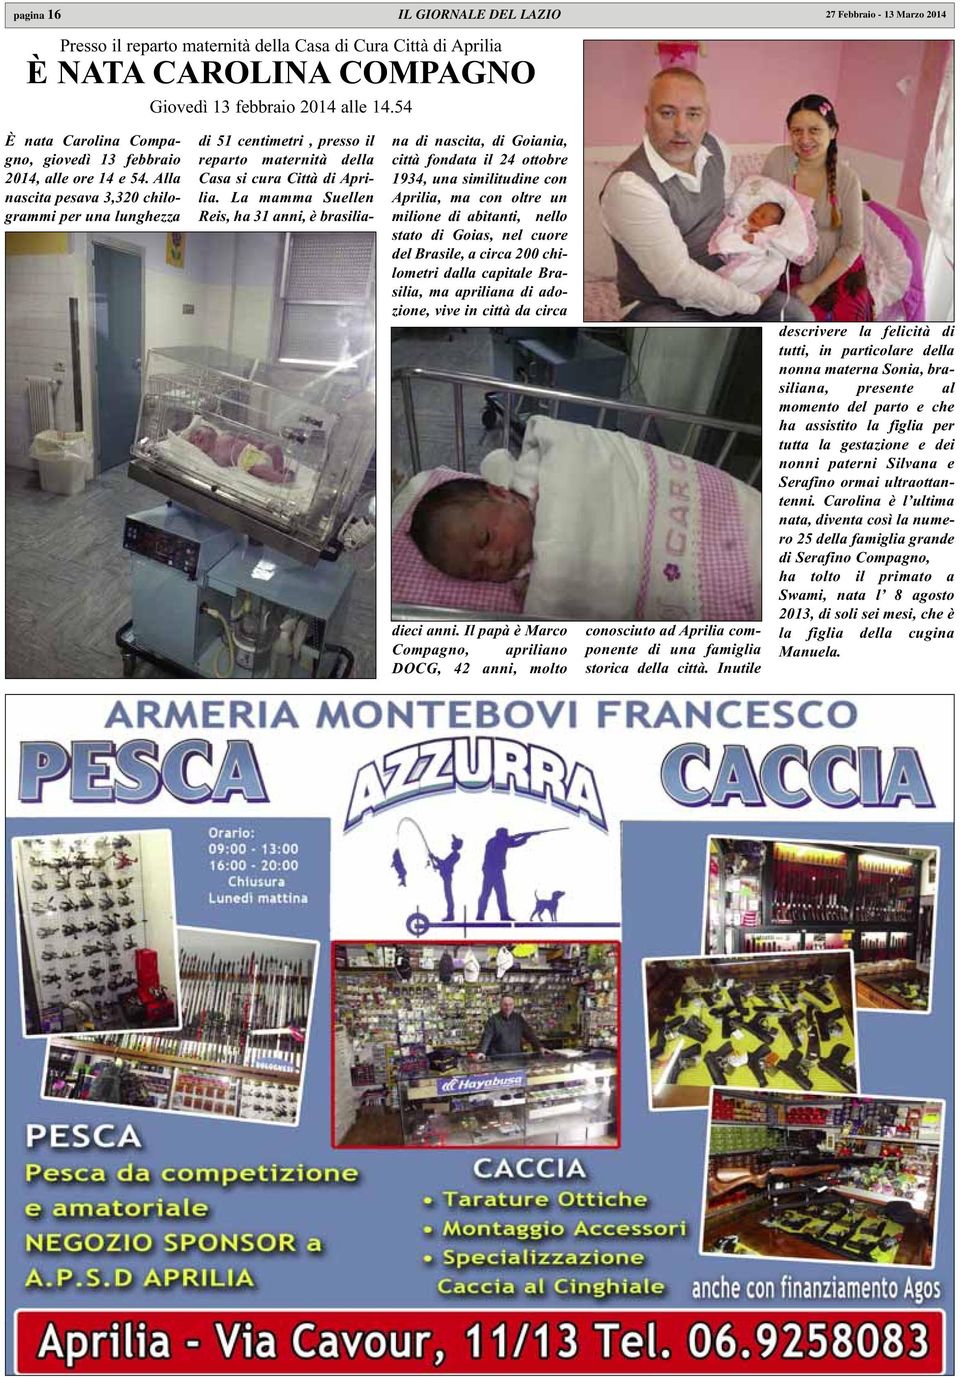 Alla nascita pesava 3,320 chilogrammi per una lunghezza di 51 centimetri, presso il reparto maternità della Casa si cura Città di Aprilia.